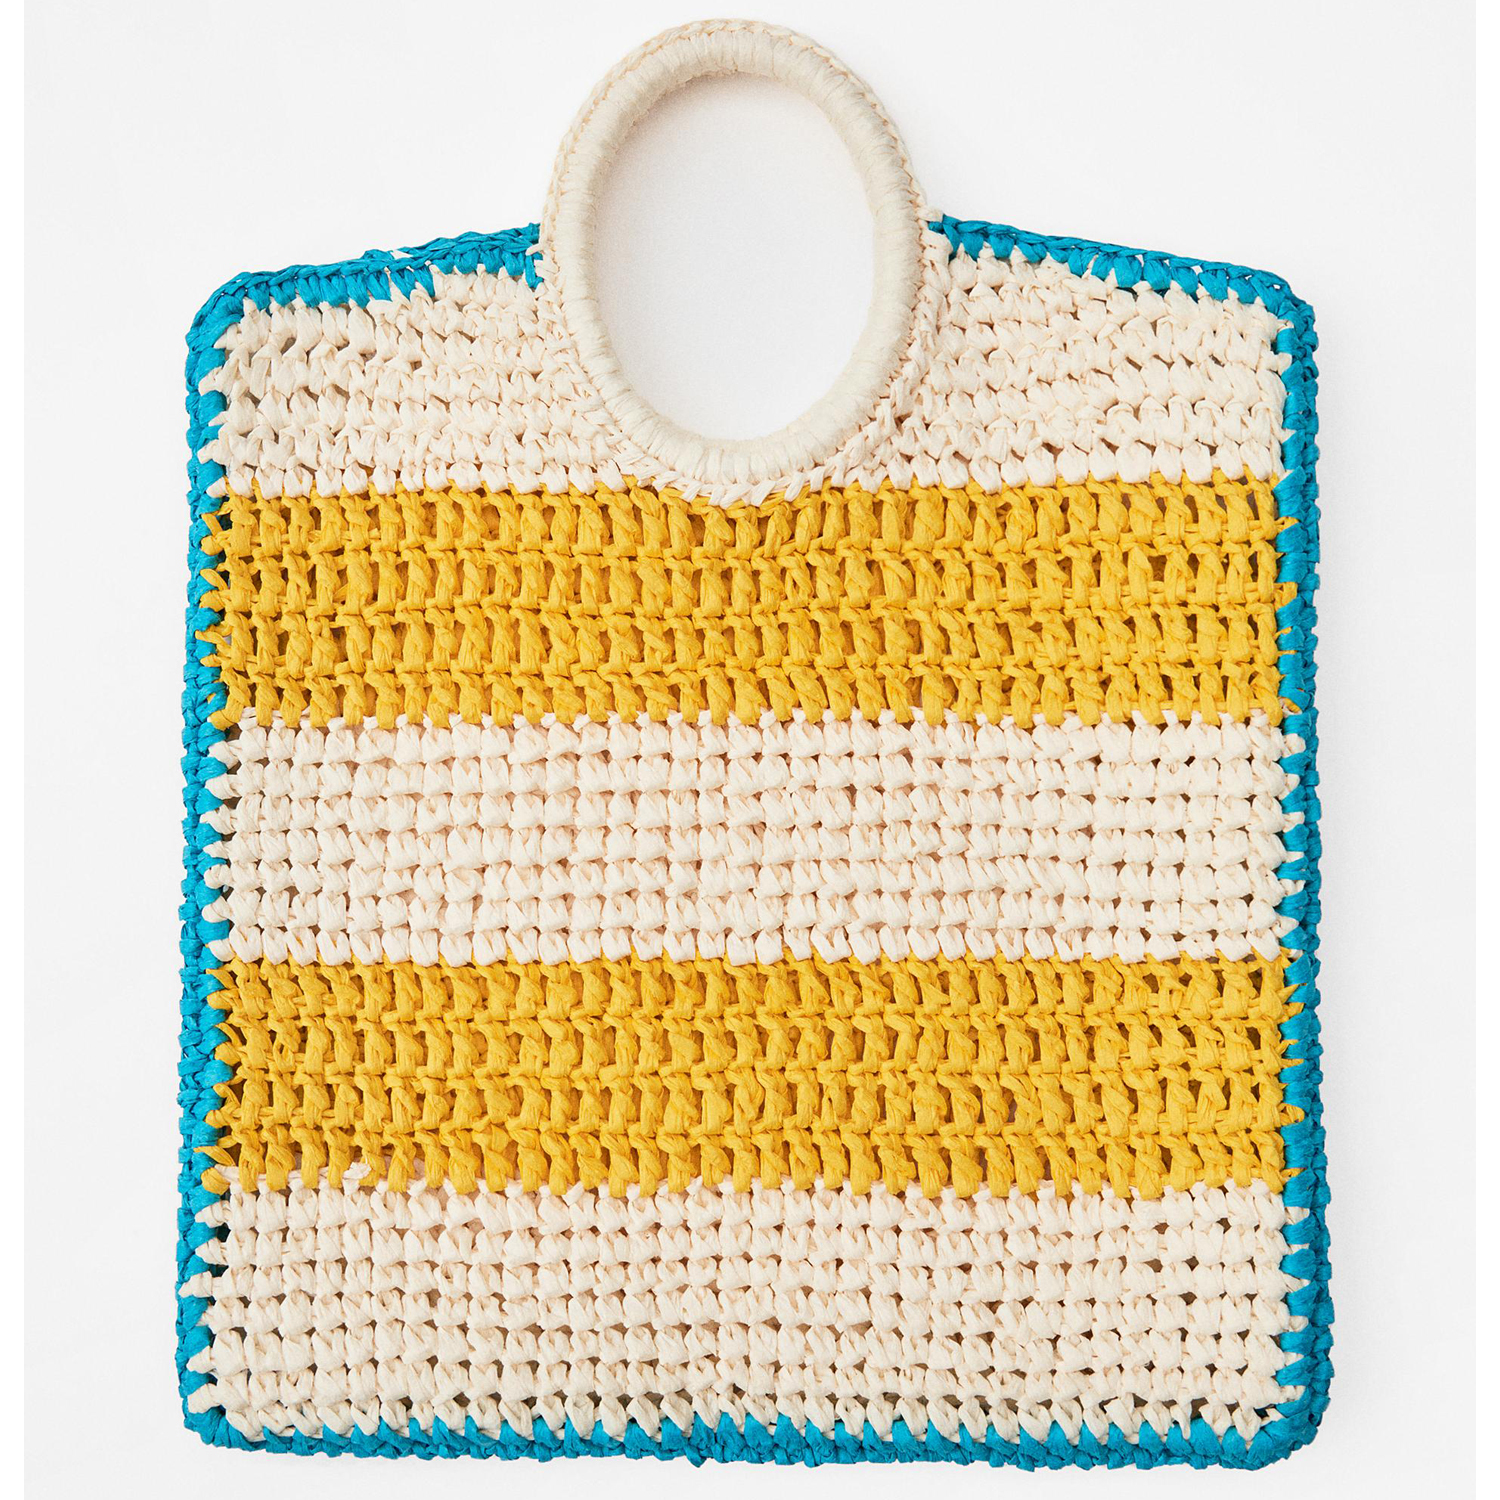 сумка zara striped crochet effect желтый Сумка Zara Striped Crochet-Effect, желтый